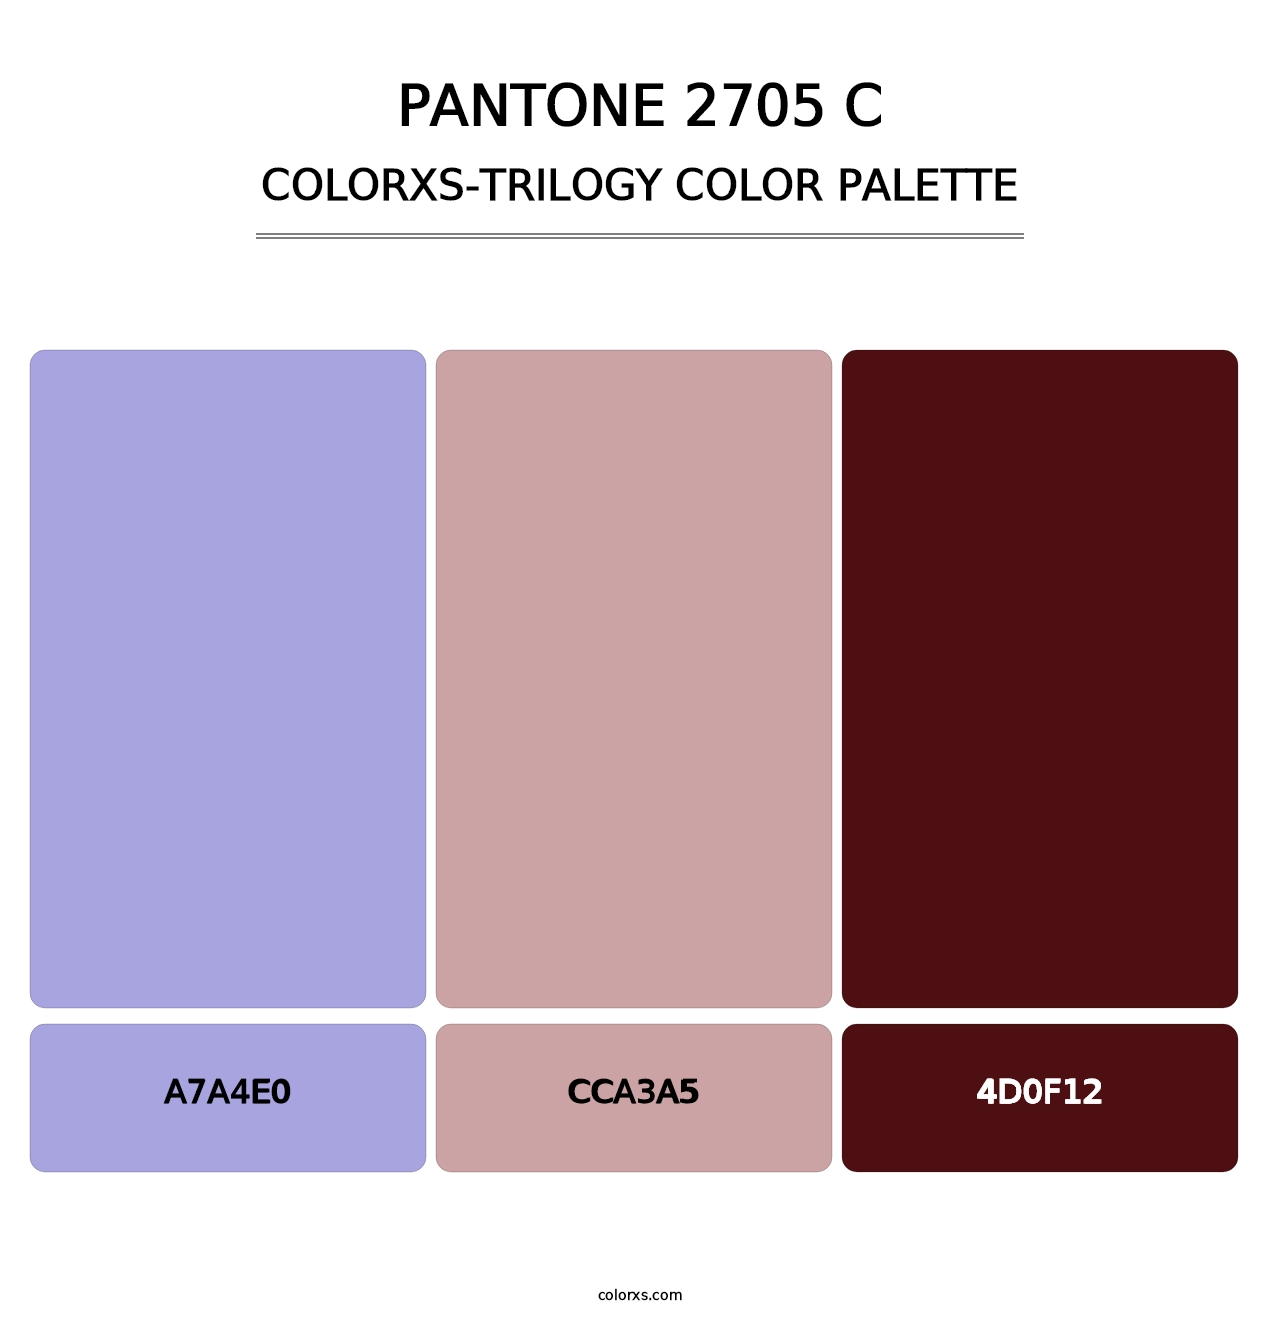 PANTONE 2705 C - Colorxs Trilogy Palette